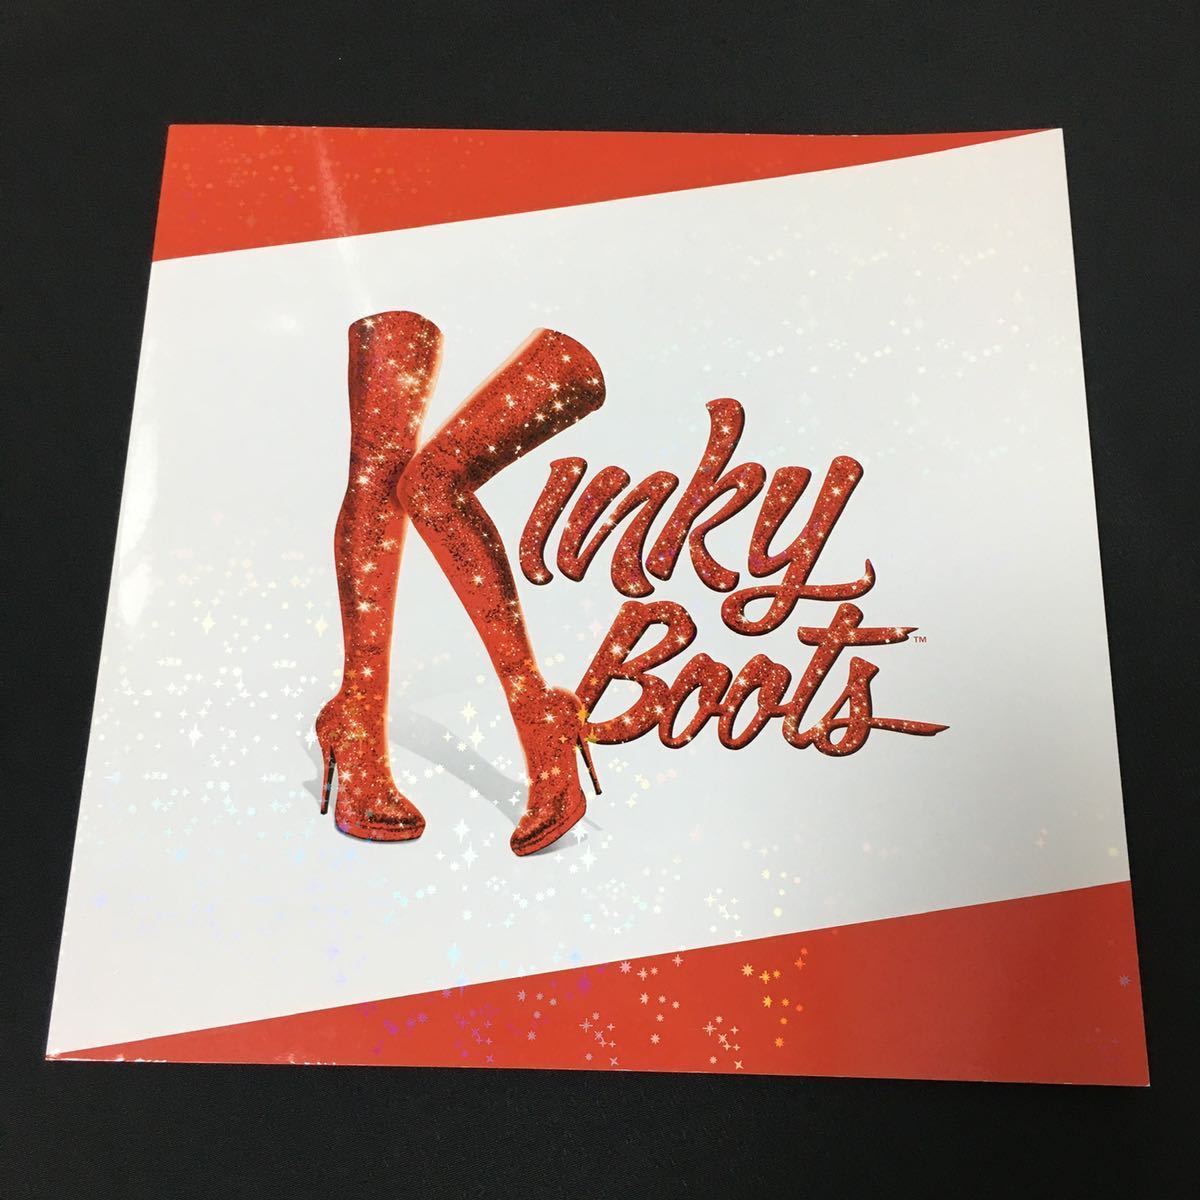 2016年 ] Kinky Boots キンキーブーツ 日本版 パンフレット 小池徹平